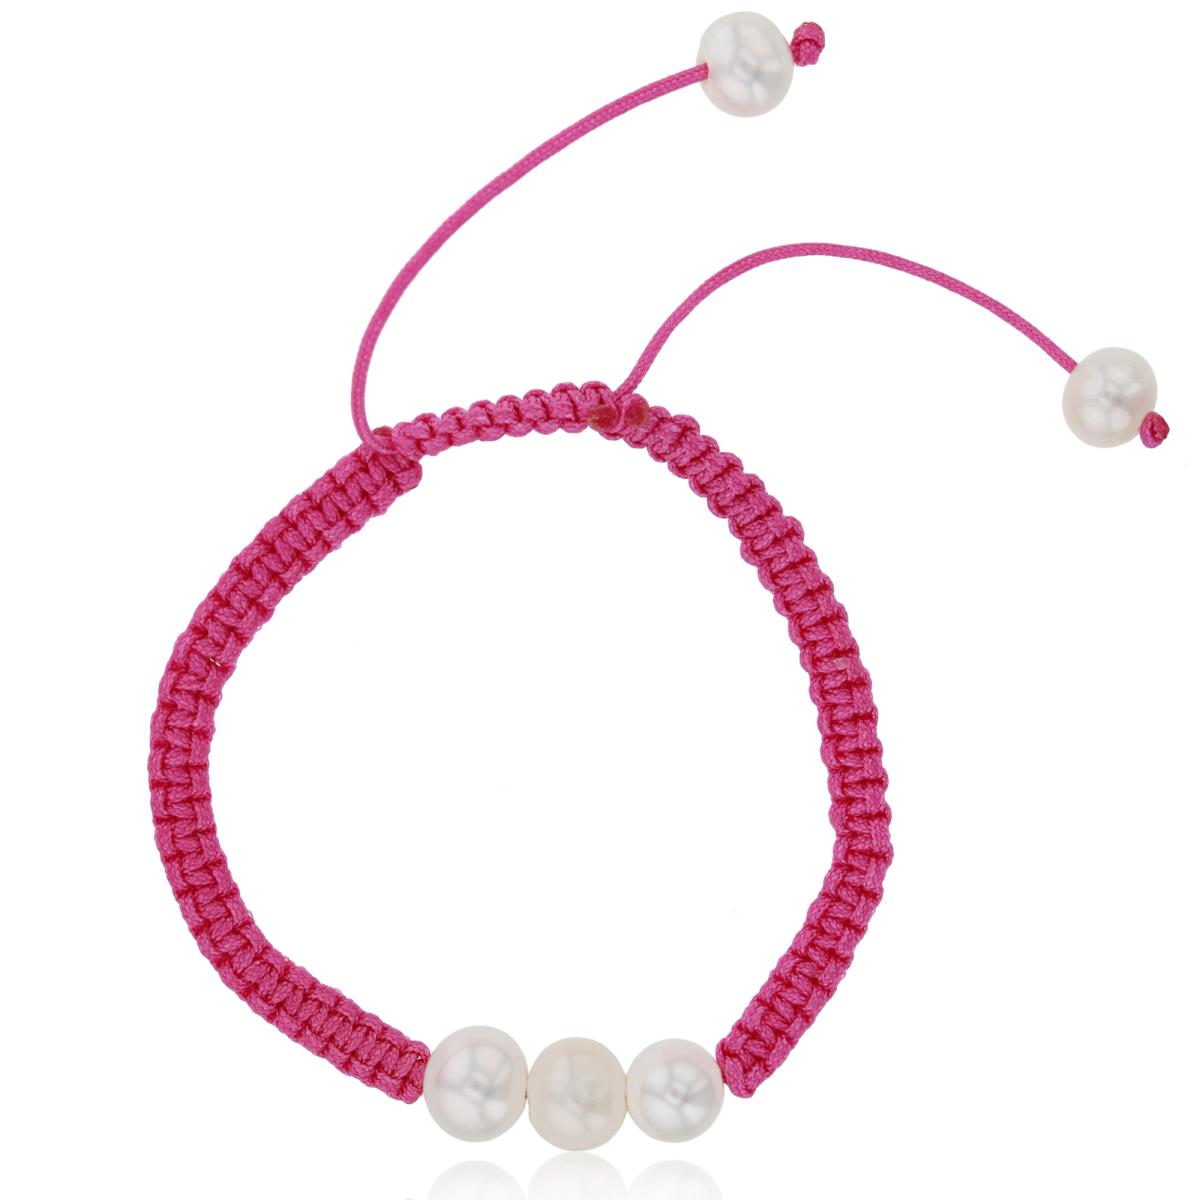 Triple 6-7mm Freshwater Pearls Pink Adjustable Kid's Macrame Bracelet